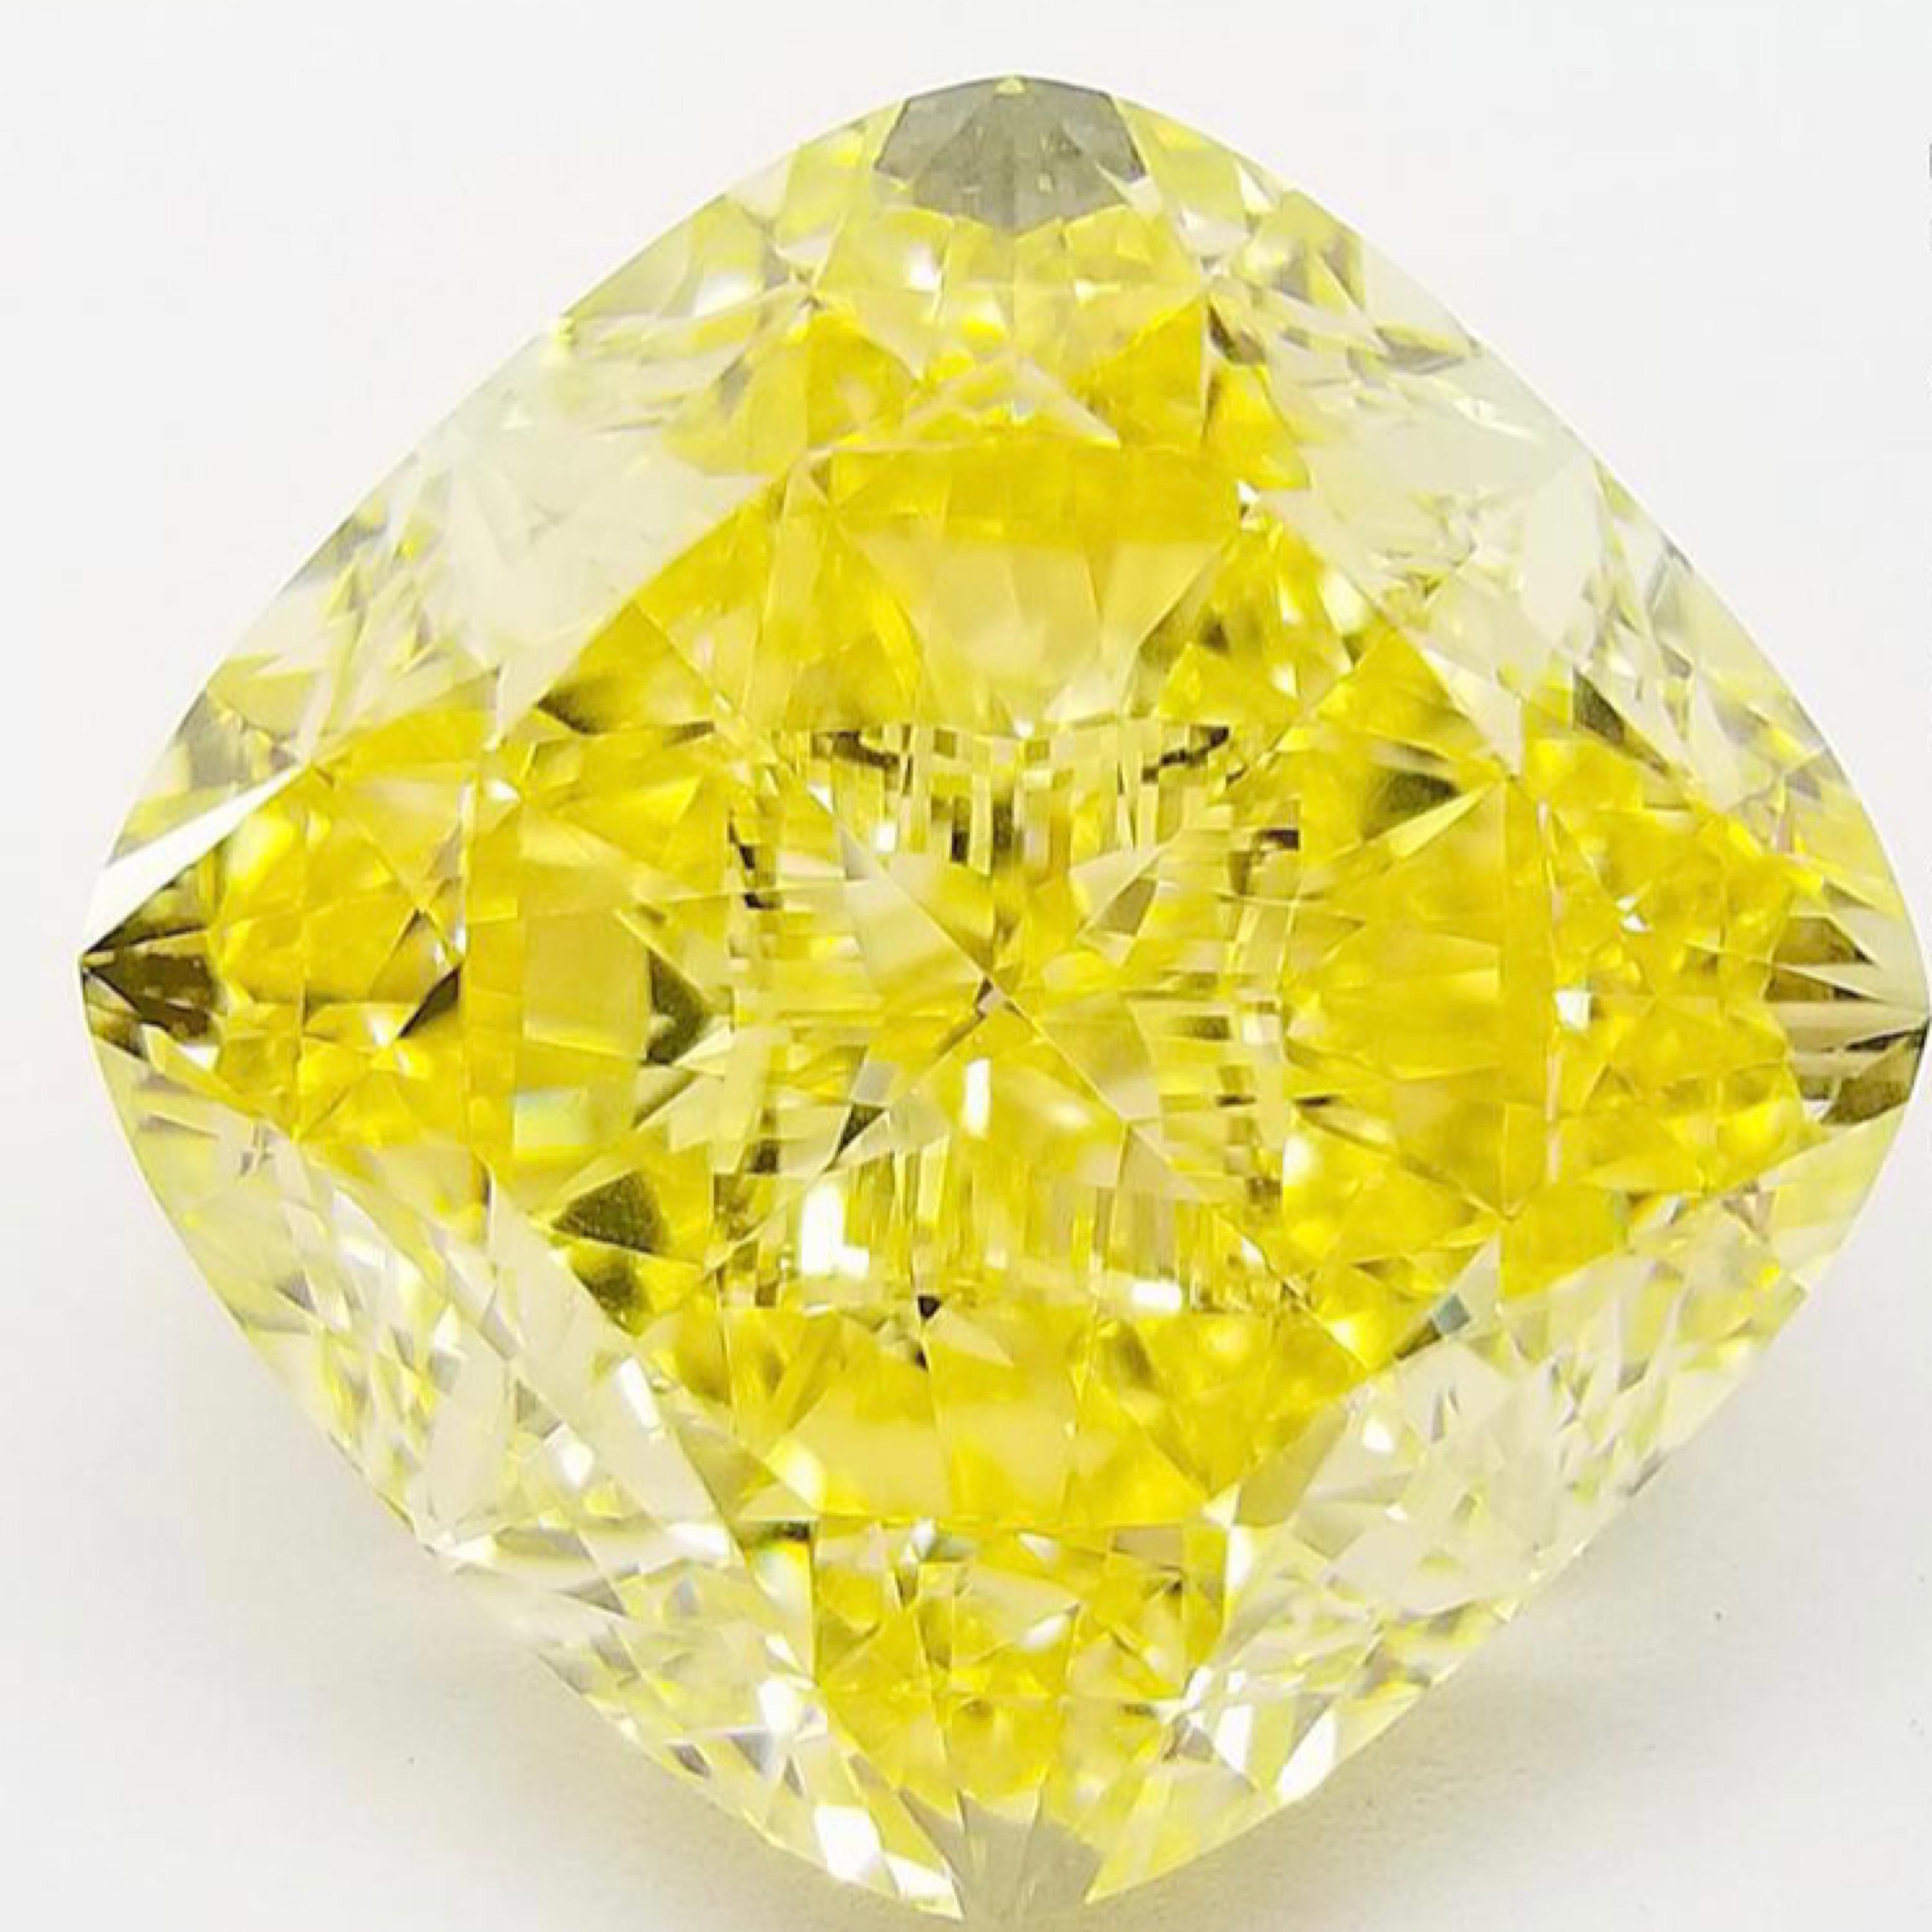 Aus dem Museumsgewölbe von Emilio Jewelry in der berühmten New Yorker Fifth Avenue,
Präsentiert wird ein sehr spezieller und seltener Gia-zertifizierter natürlicher, intensiv gelber Diamant, lupenrein!!! 
Wir haben uns darauf spezialisiert,